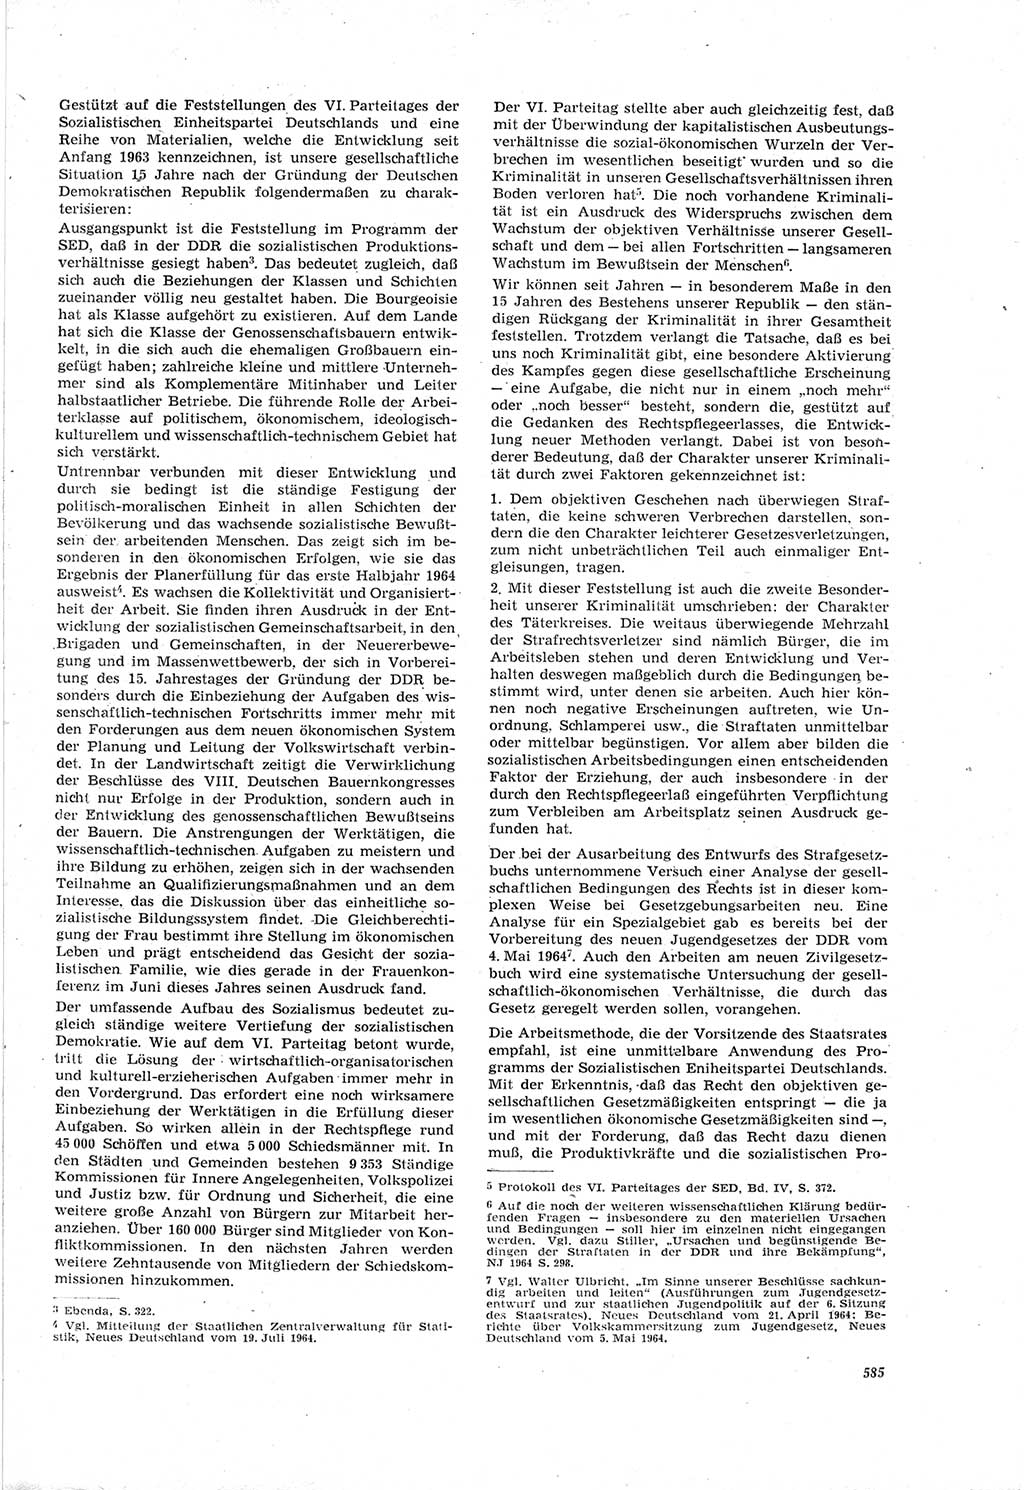 Neue Justiz (NJ), Zeitschrift für Recht und Rechtswissenschaft [Deutsche Demokratische Republik (DDR)], 18. Jahrgang 1964, Seite 585 (NJ DDR 1964, S. 585)